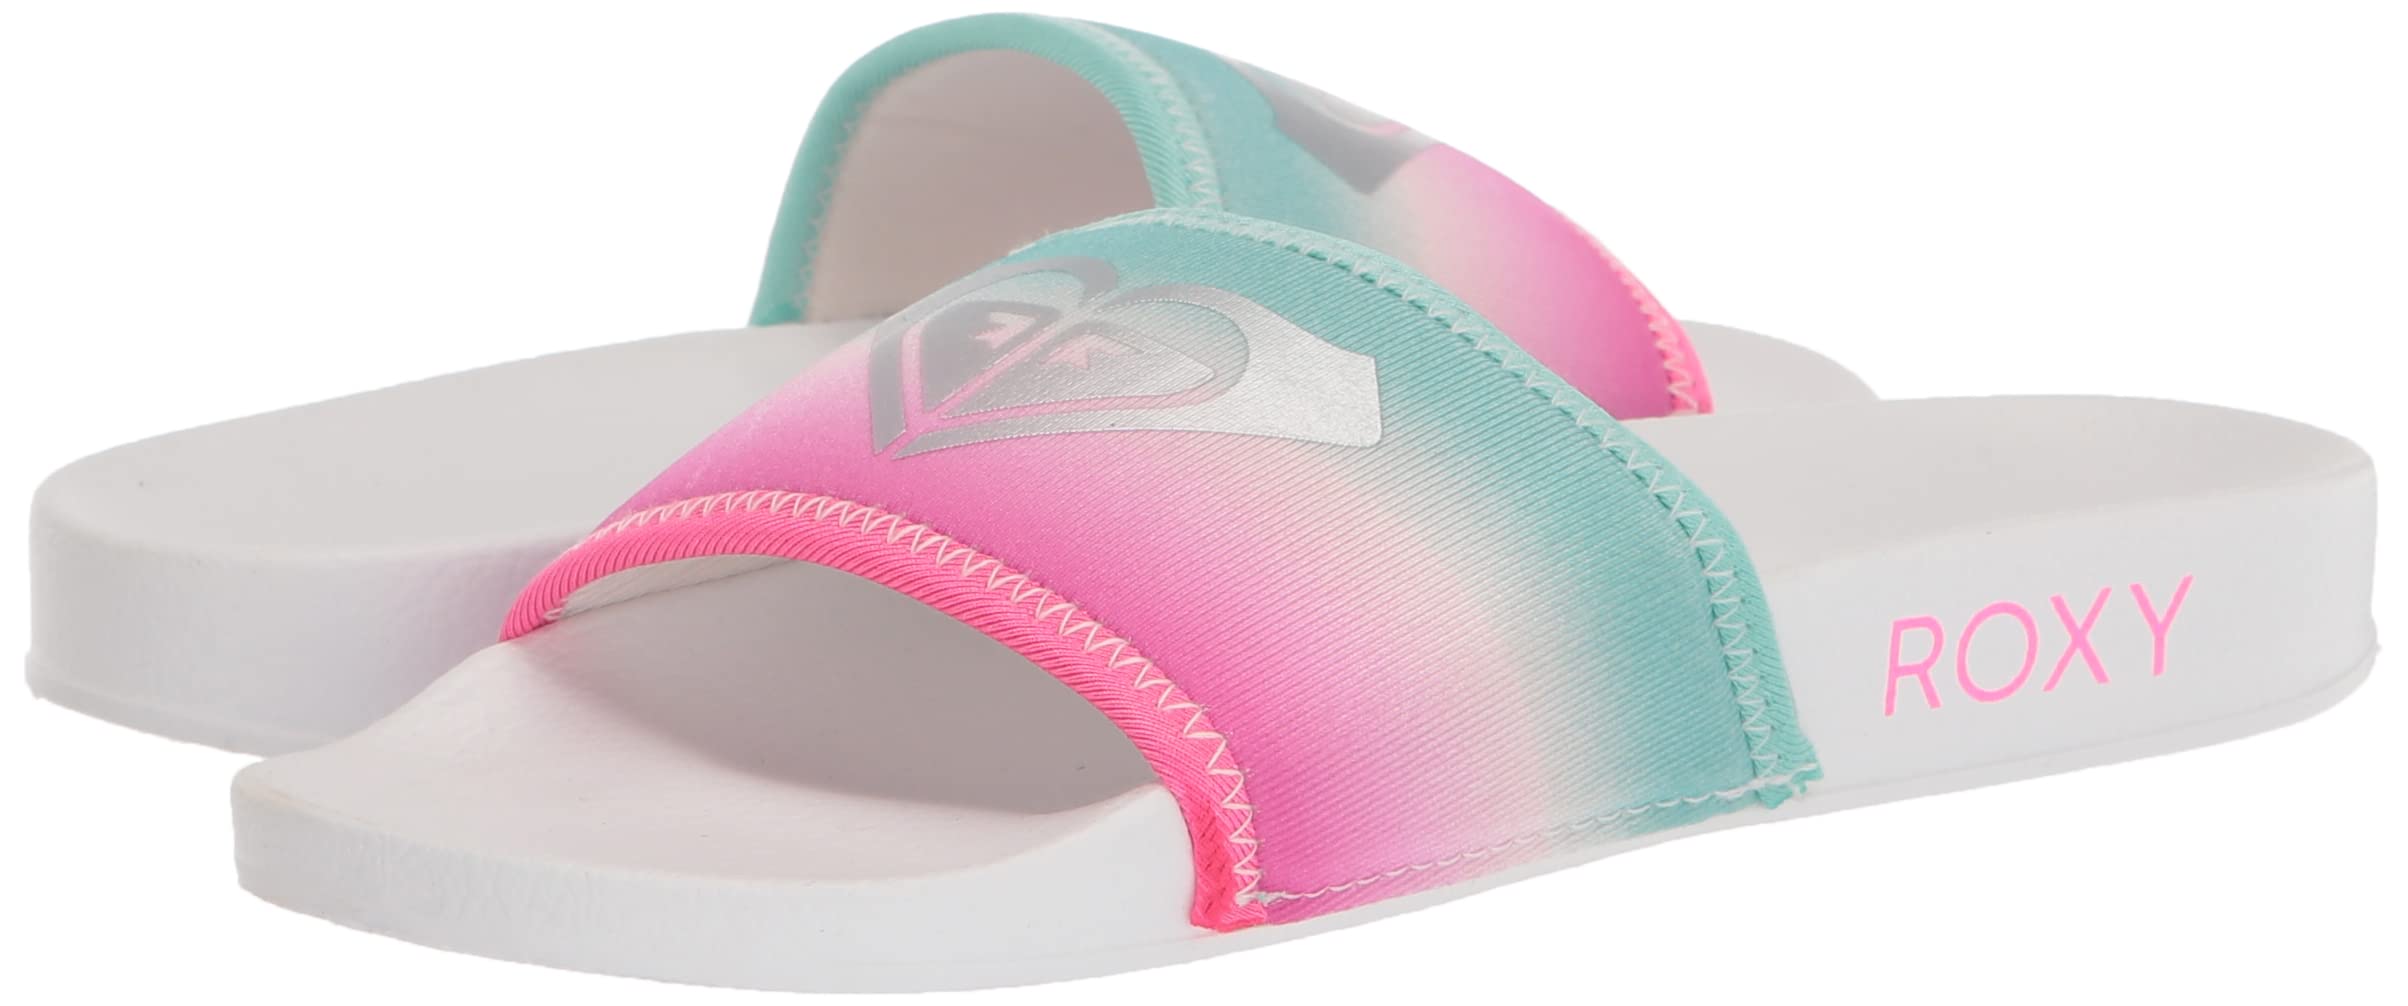 Roxy Women's Rg Slippy Slide Sandal